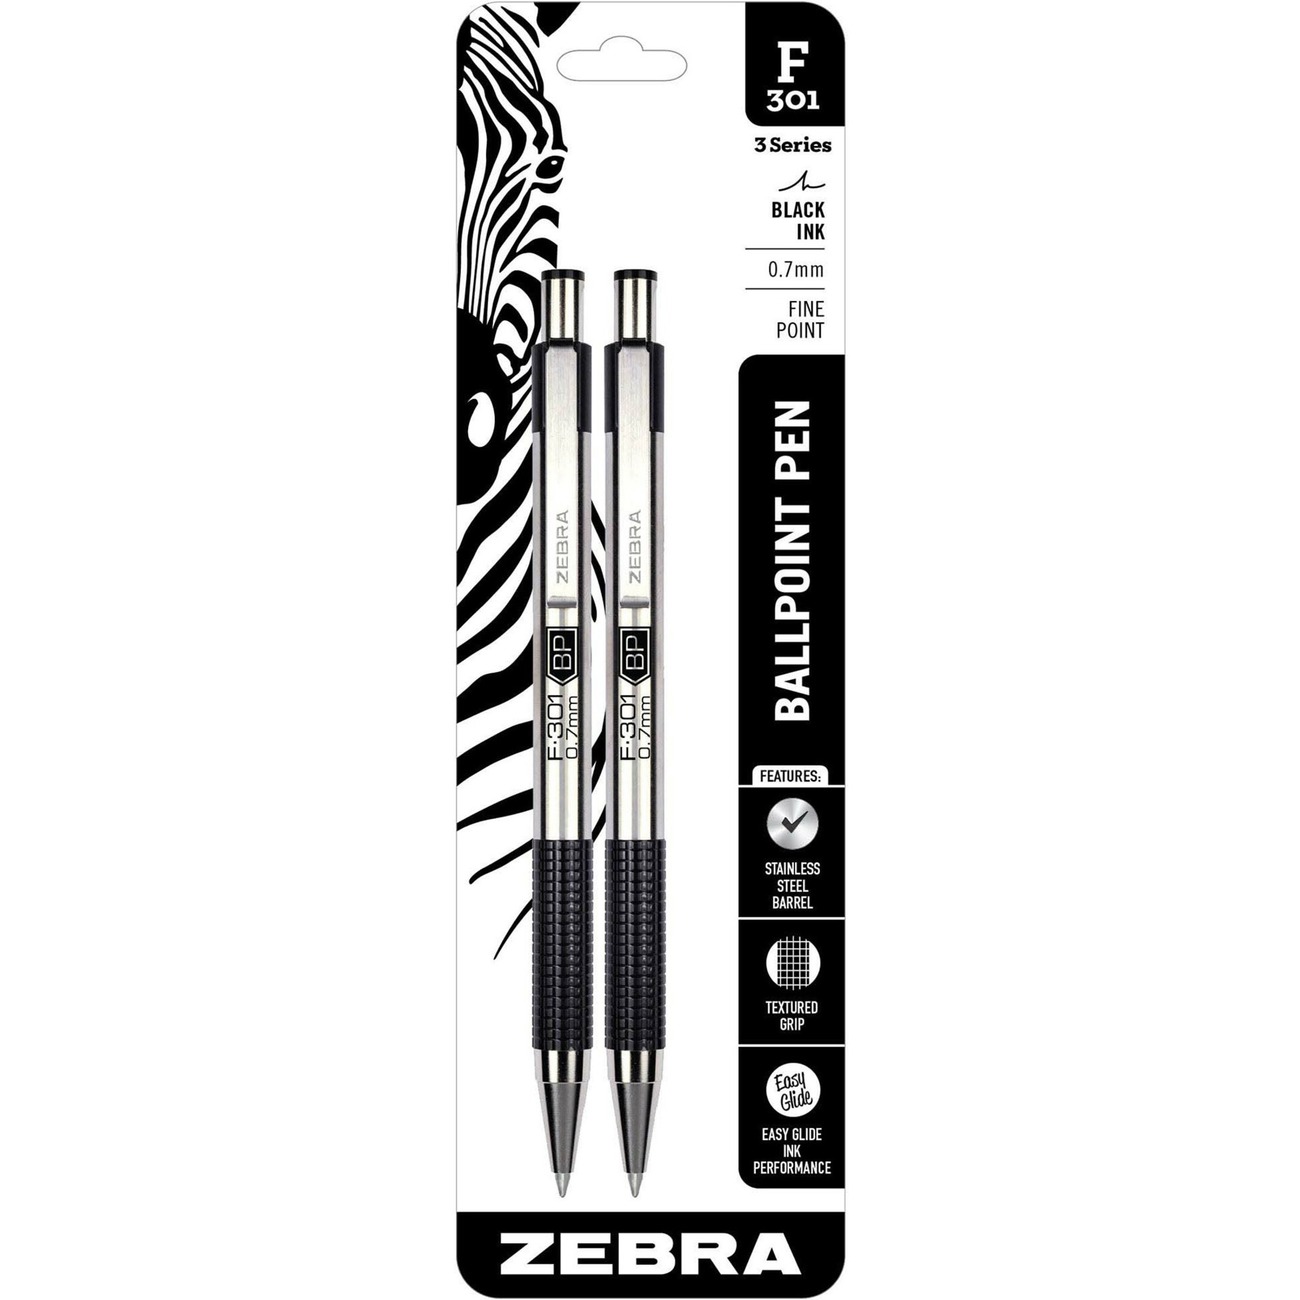 TUL Fine Liner Felt Tip Pen Fine 1.0 mm Silver Barrels Assorted Inks Pack  Of 4 Pens - Office Depot